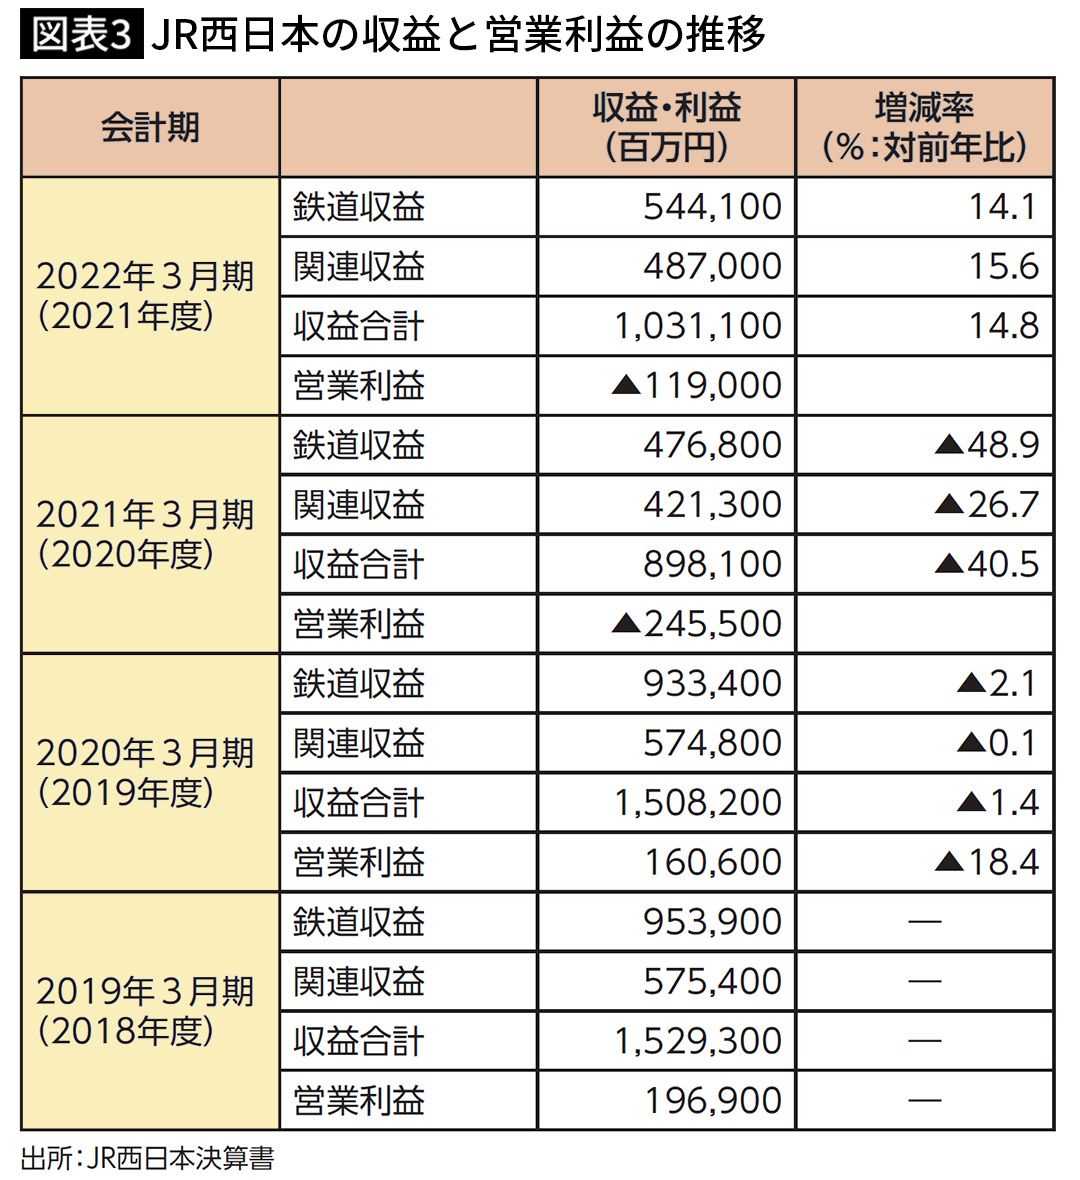 【図表3】JR西日本の収益と営業利益の推移